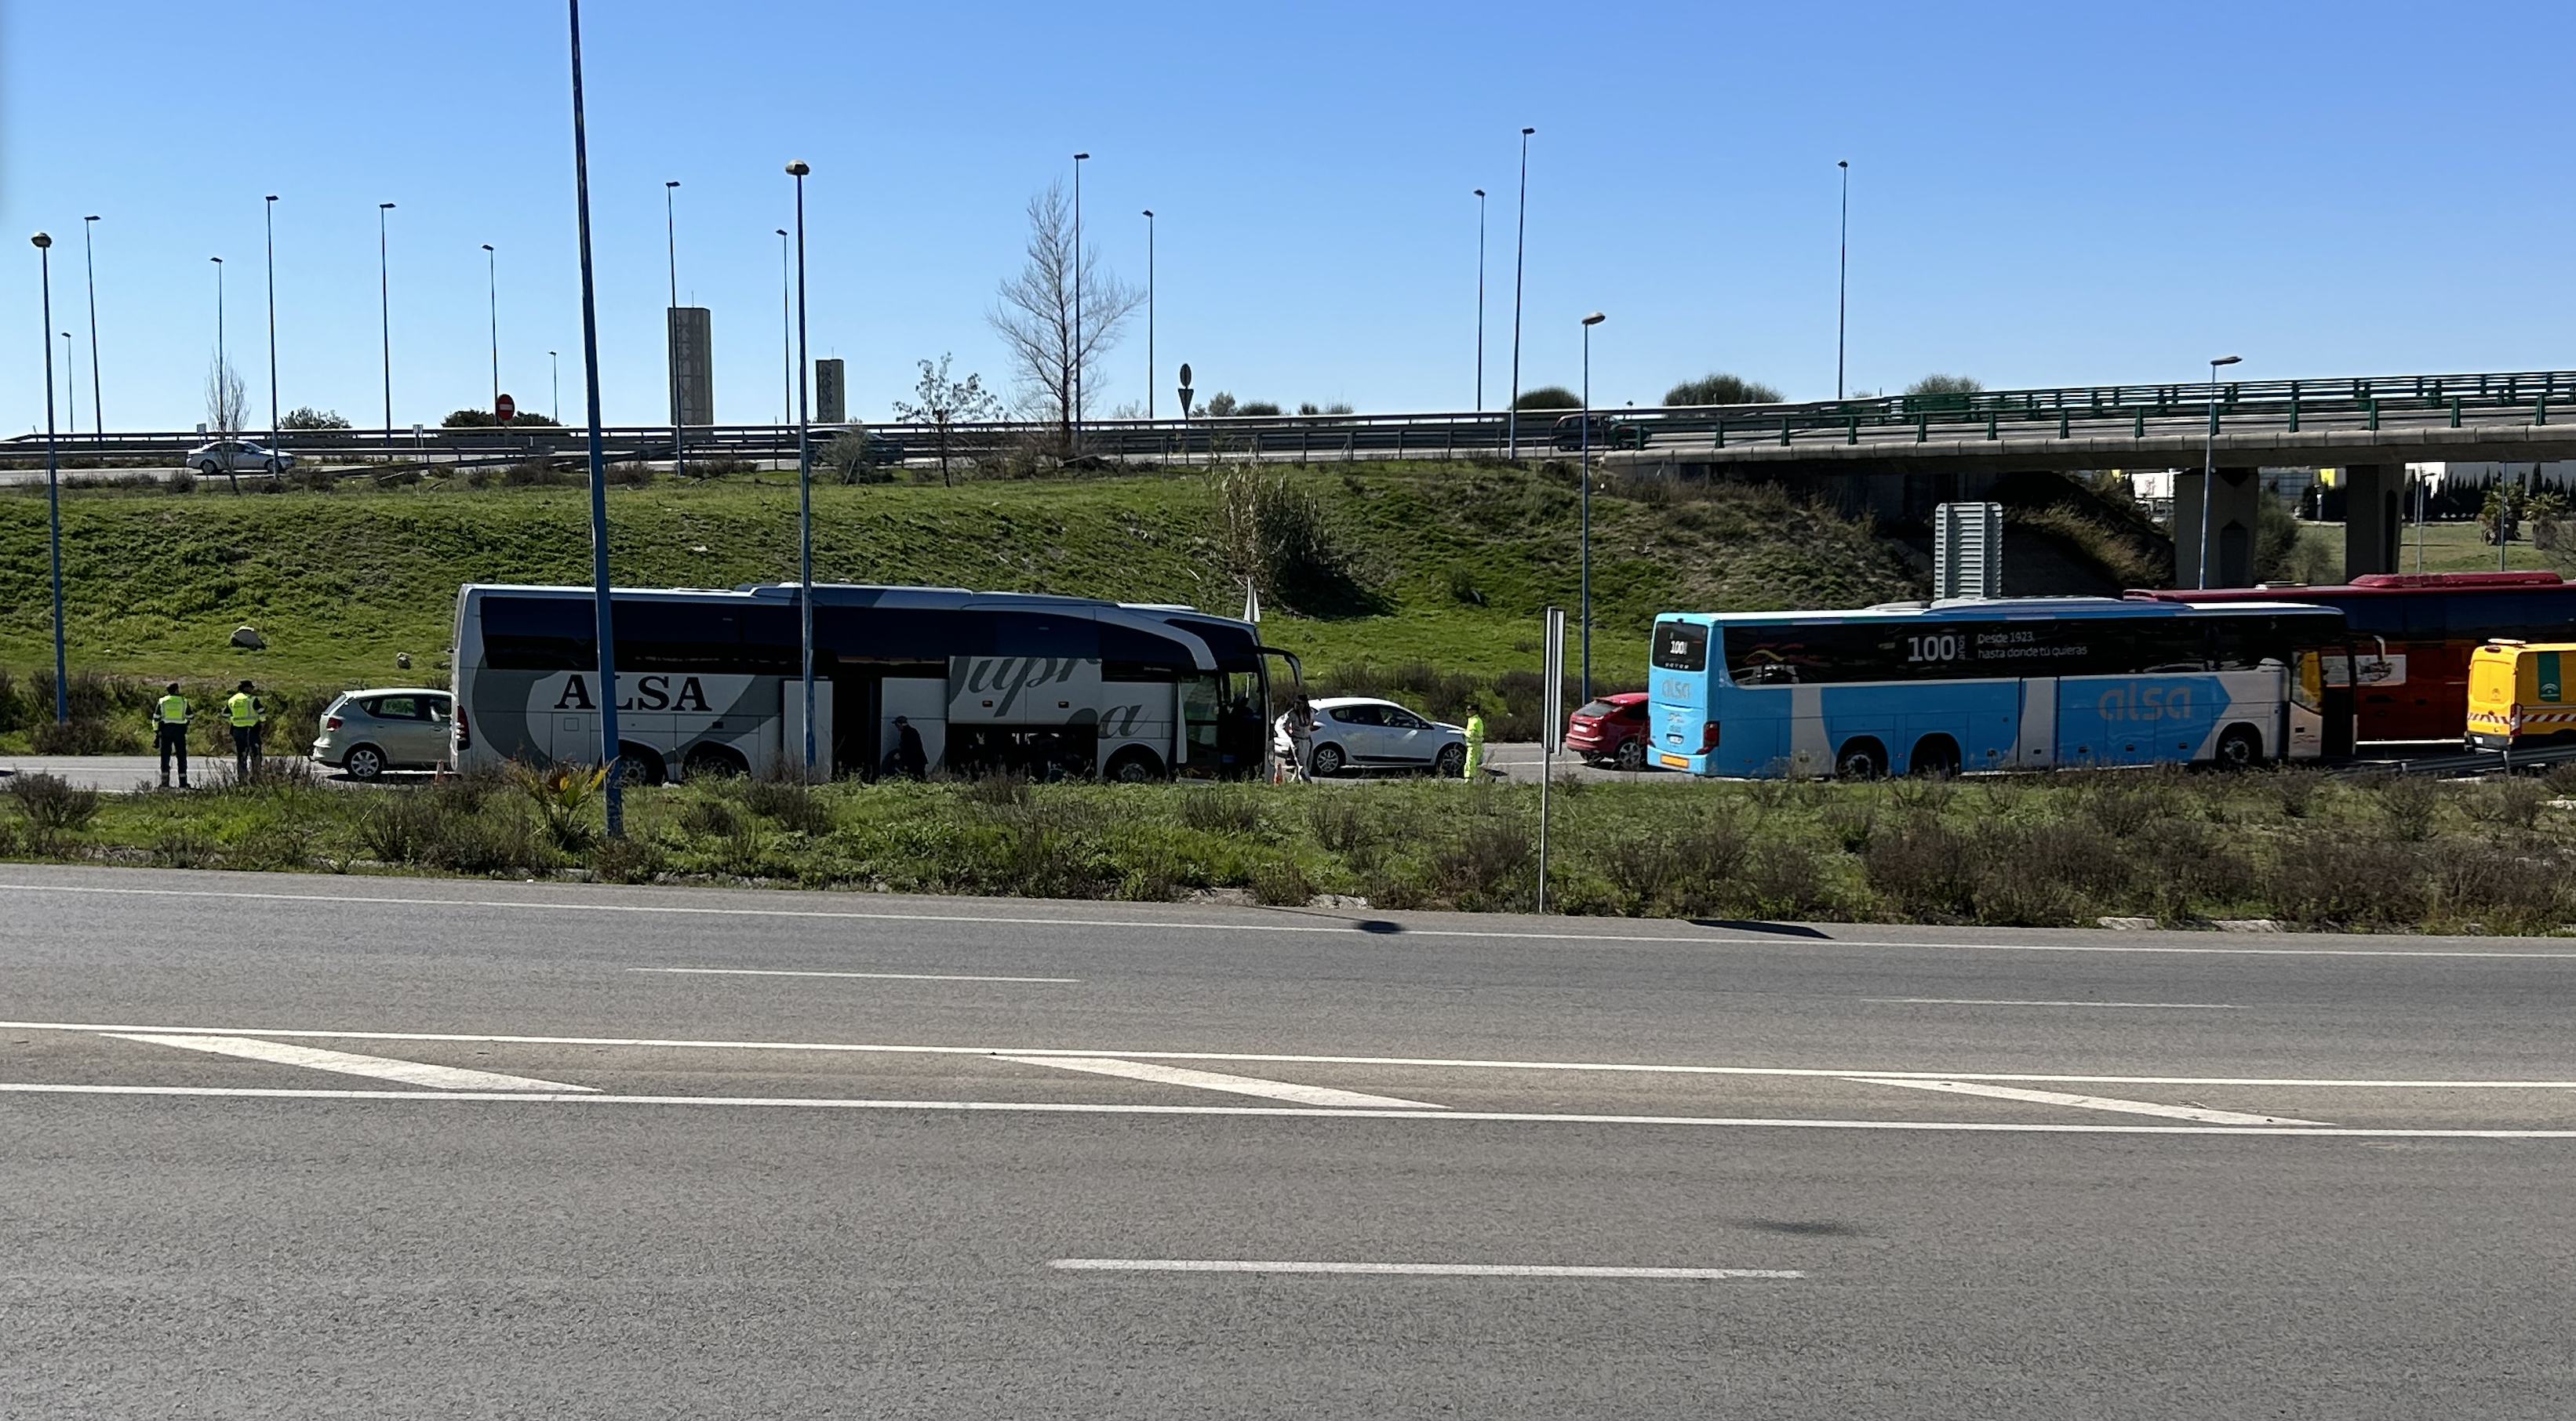 Hacia las dos y media de la tarde un segundo autobús de la misma empresa ha recogido a los pasajeros y sus equipajes para continuar el trayecto hacia su destino